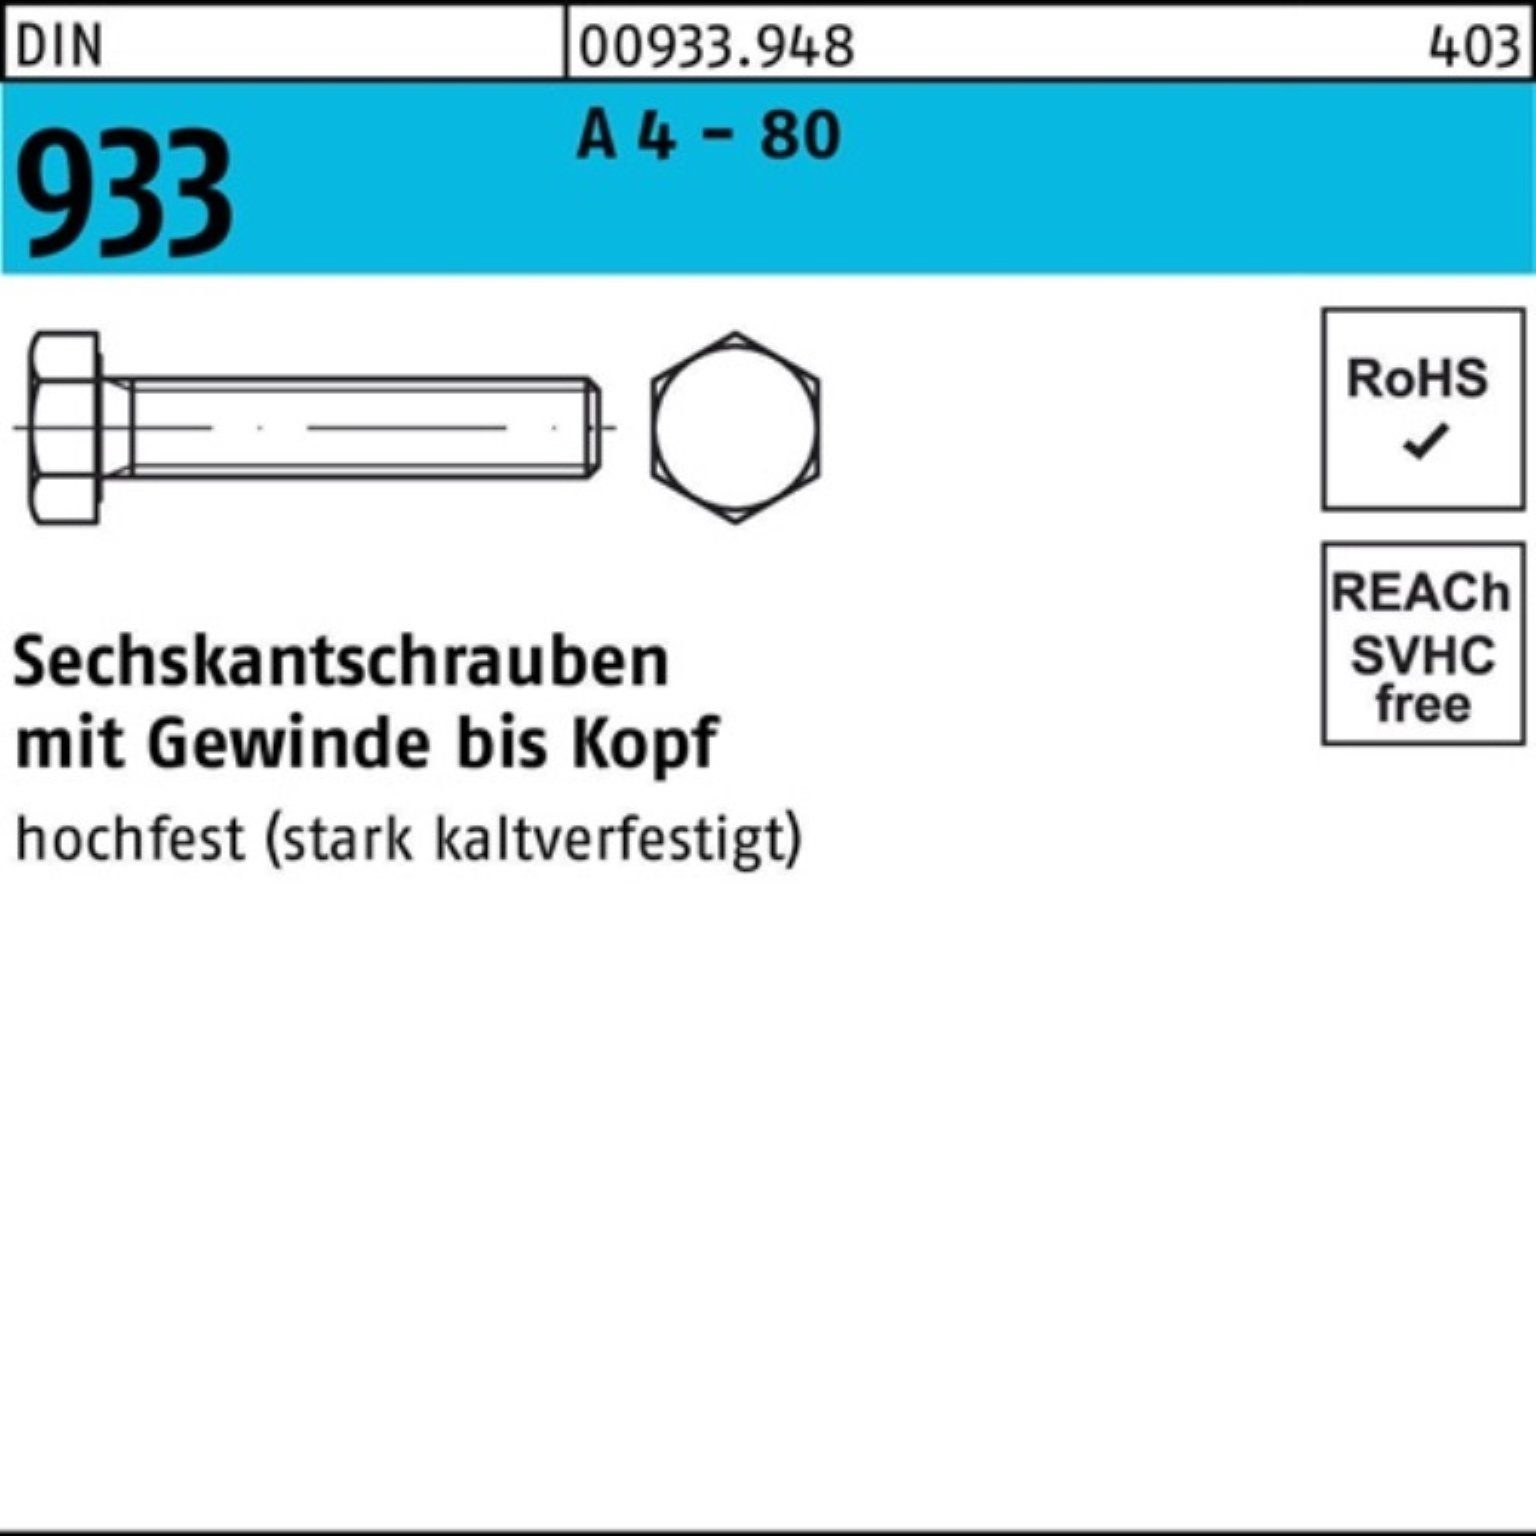 Reyher Sechskantschraube 100er Pack Sechskantschraube DIN 933 VG M16x 35 A 4 - 80 50 Stück DIN